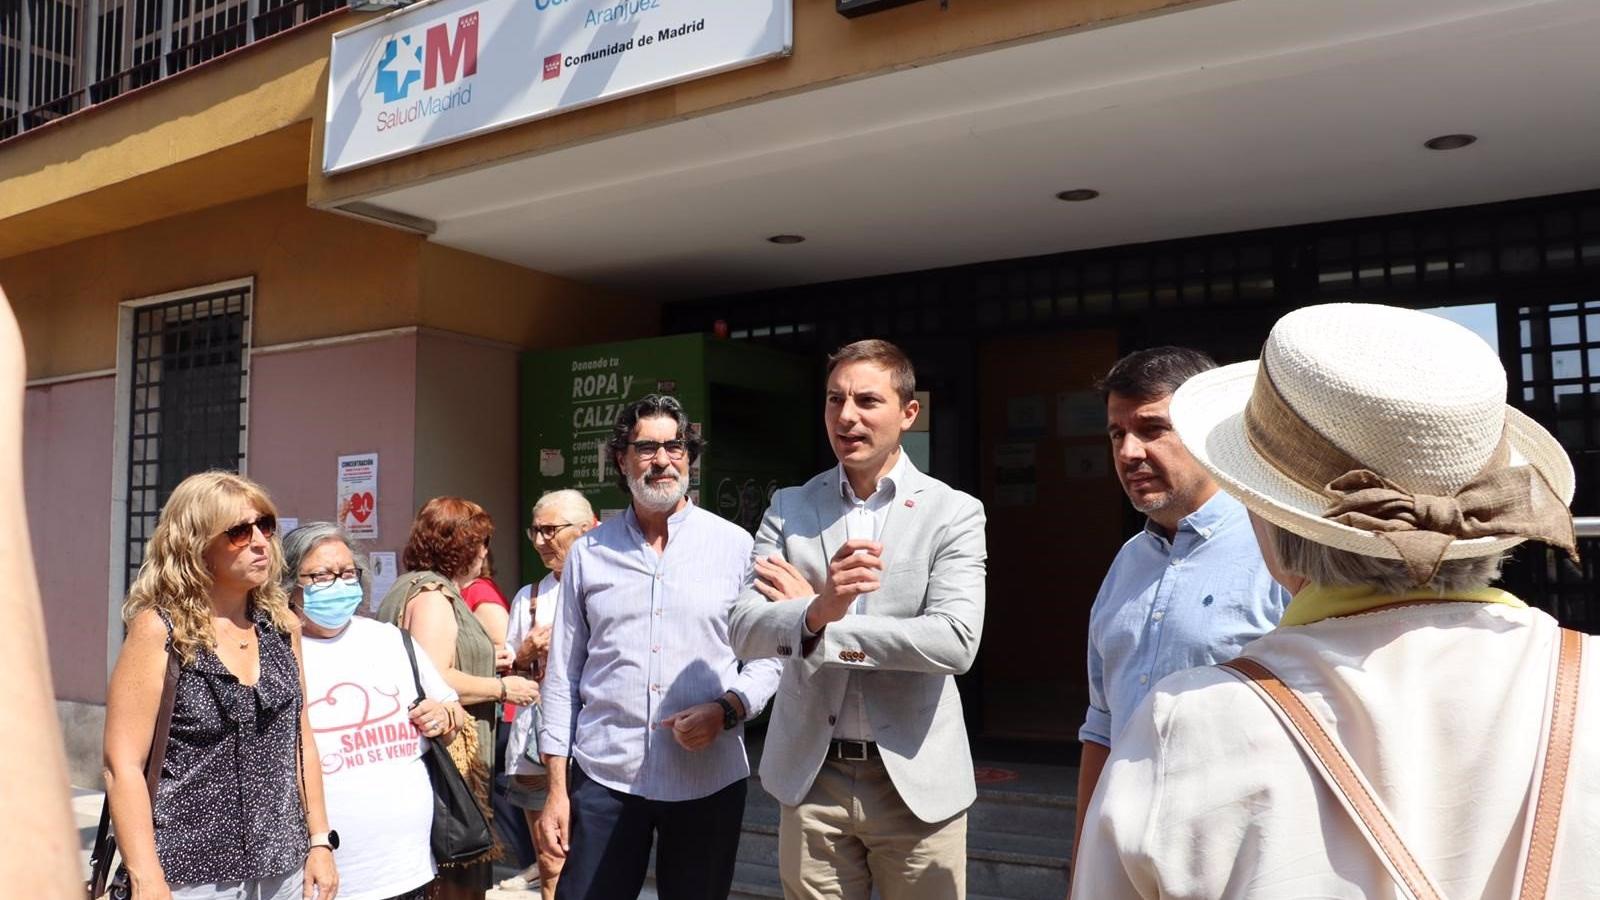 Lobato pide la apertura de las Urgencias de Atención Primaria en Aranjuez y critica el 